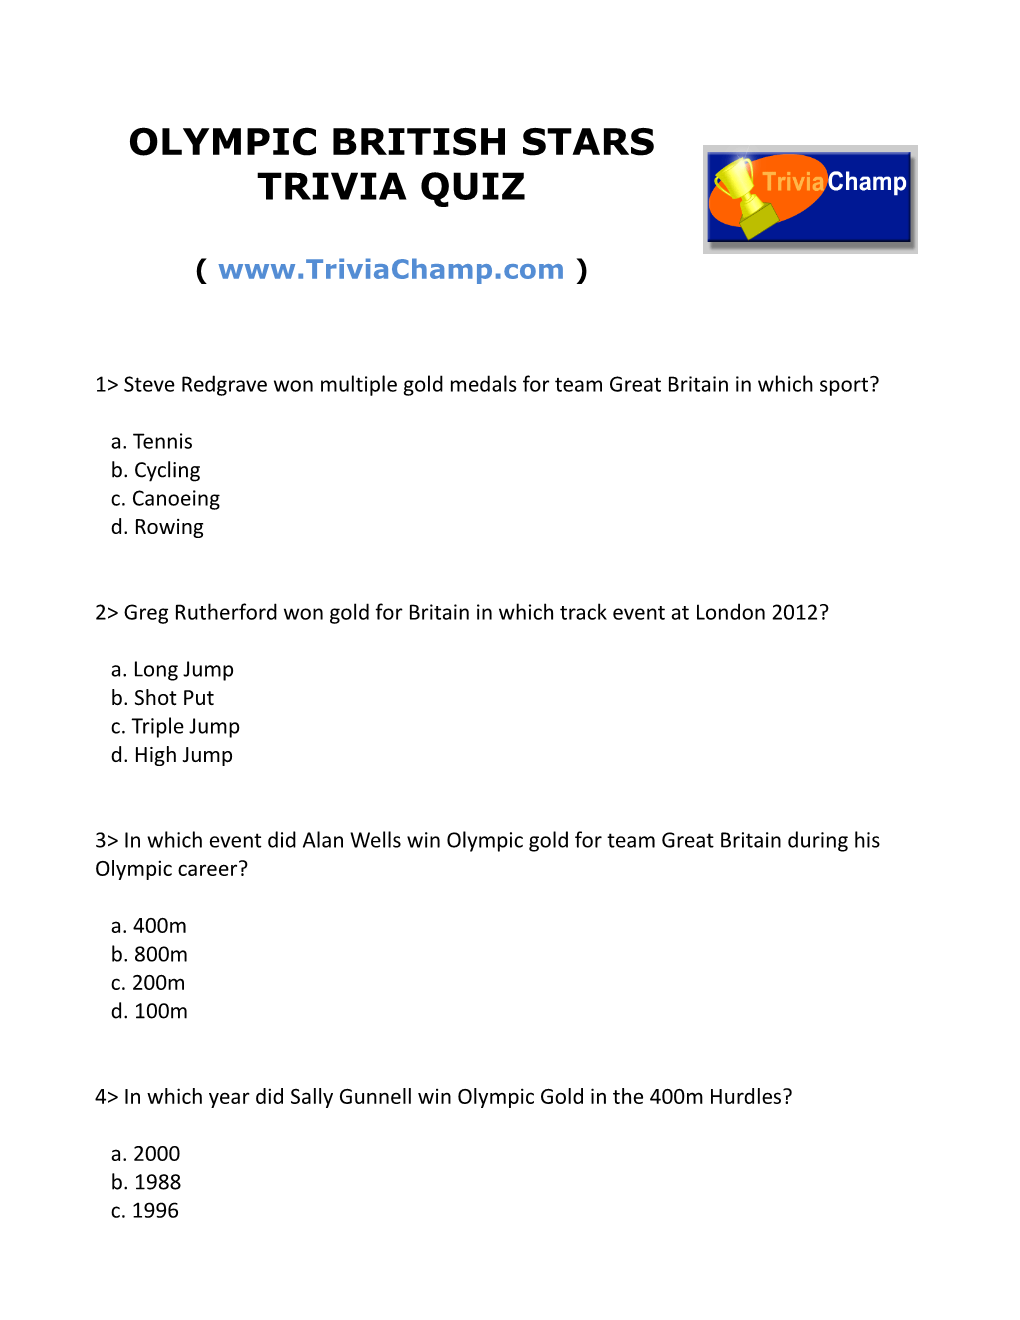 Olympic British Stars Trivia Quiz